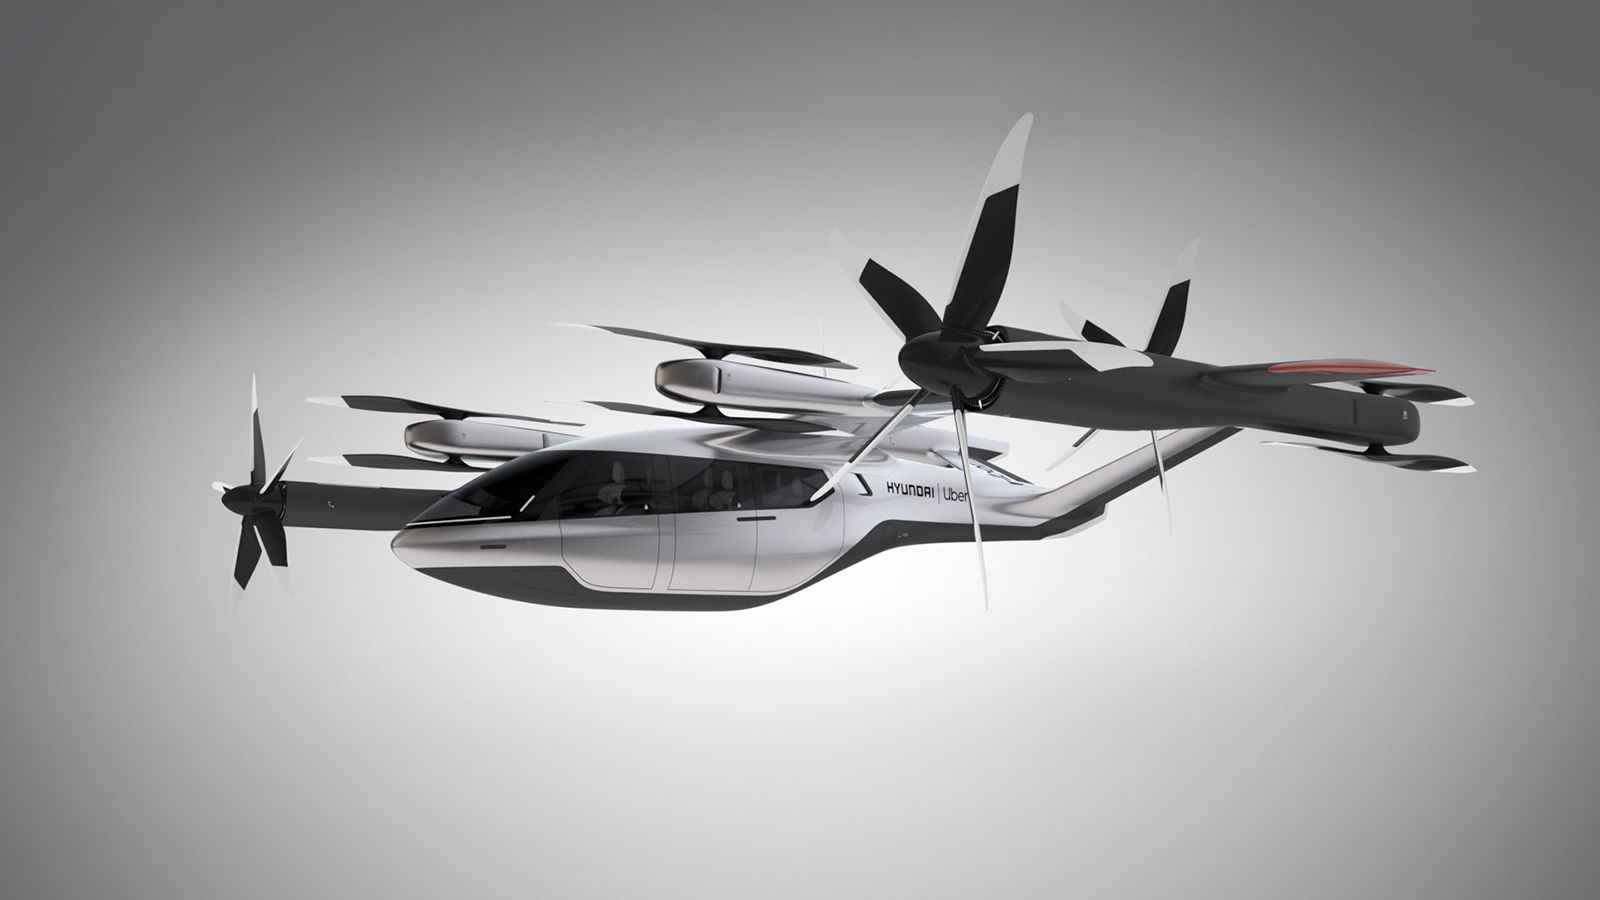 Η Hyundai -σε συνεργασία με την Uber είχε παρουσιάσει στις αρχές του 2020 το πρωτότυπο «S-A1», ένα ιπτάμενο όχημα που έχει σχεδιαστεί ώστε να έχει τη δυνατότητα κατακόρυφης απογείωσης και προσγείωσης.